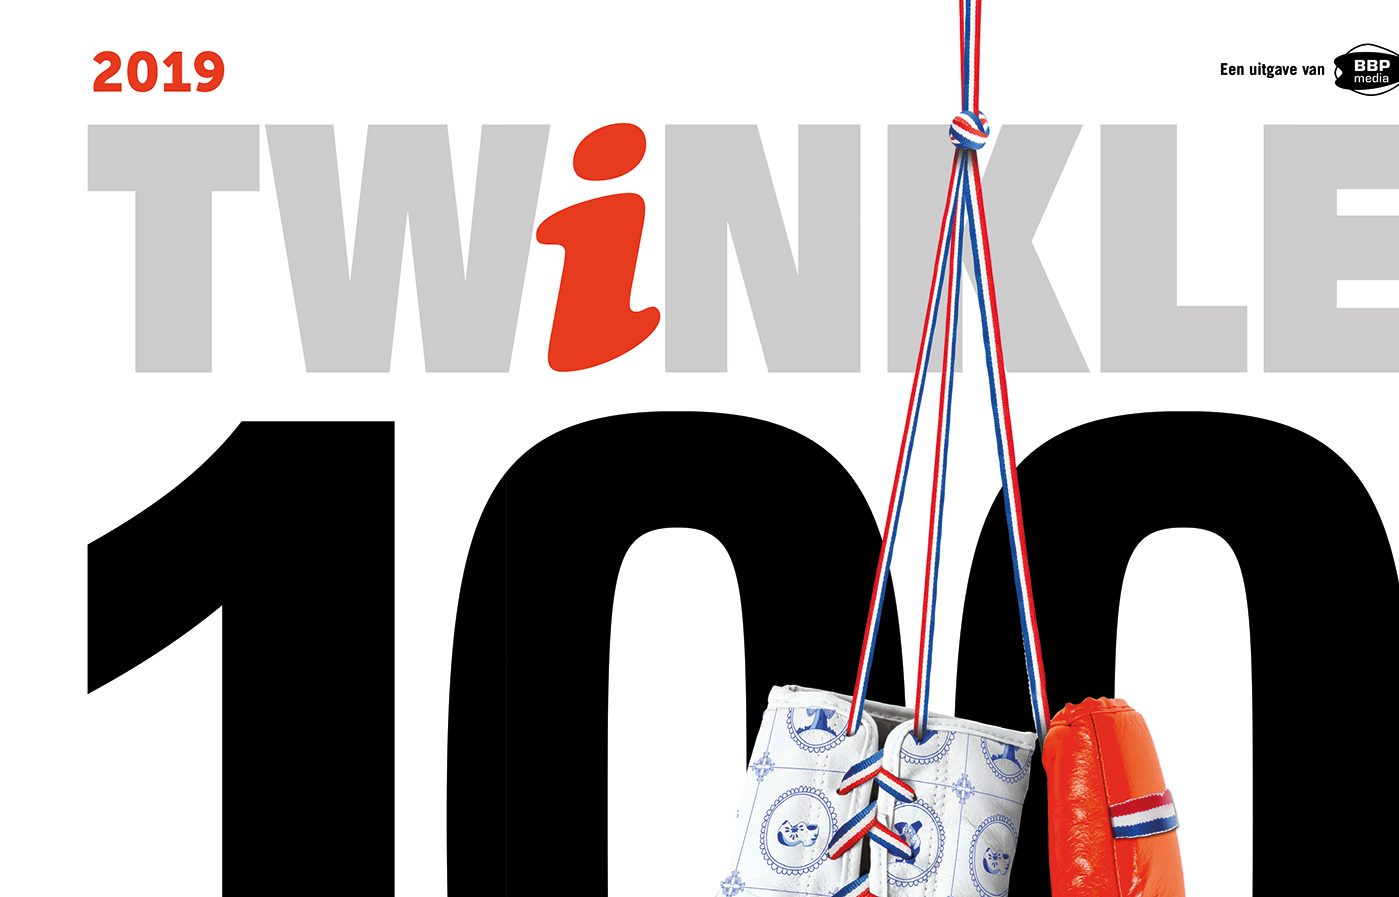 3WebApps is officieel partner van Twinkle100